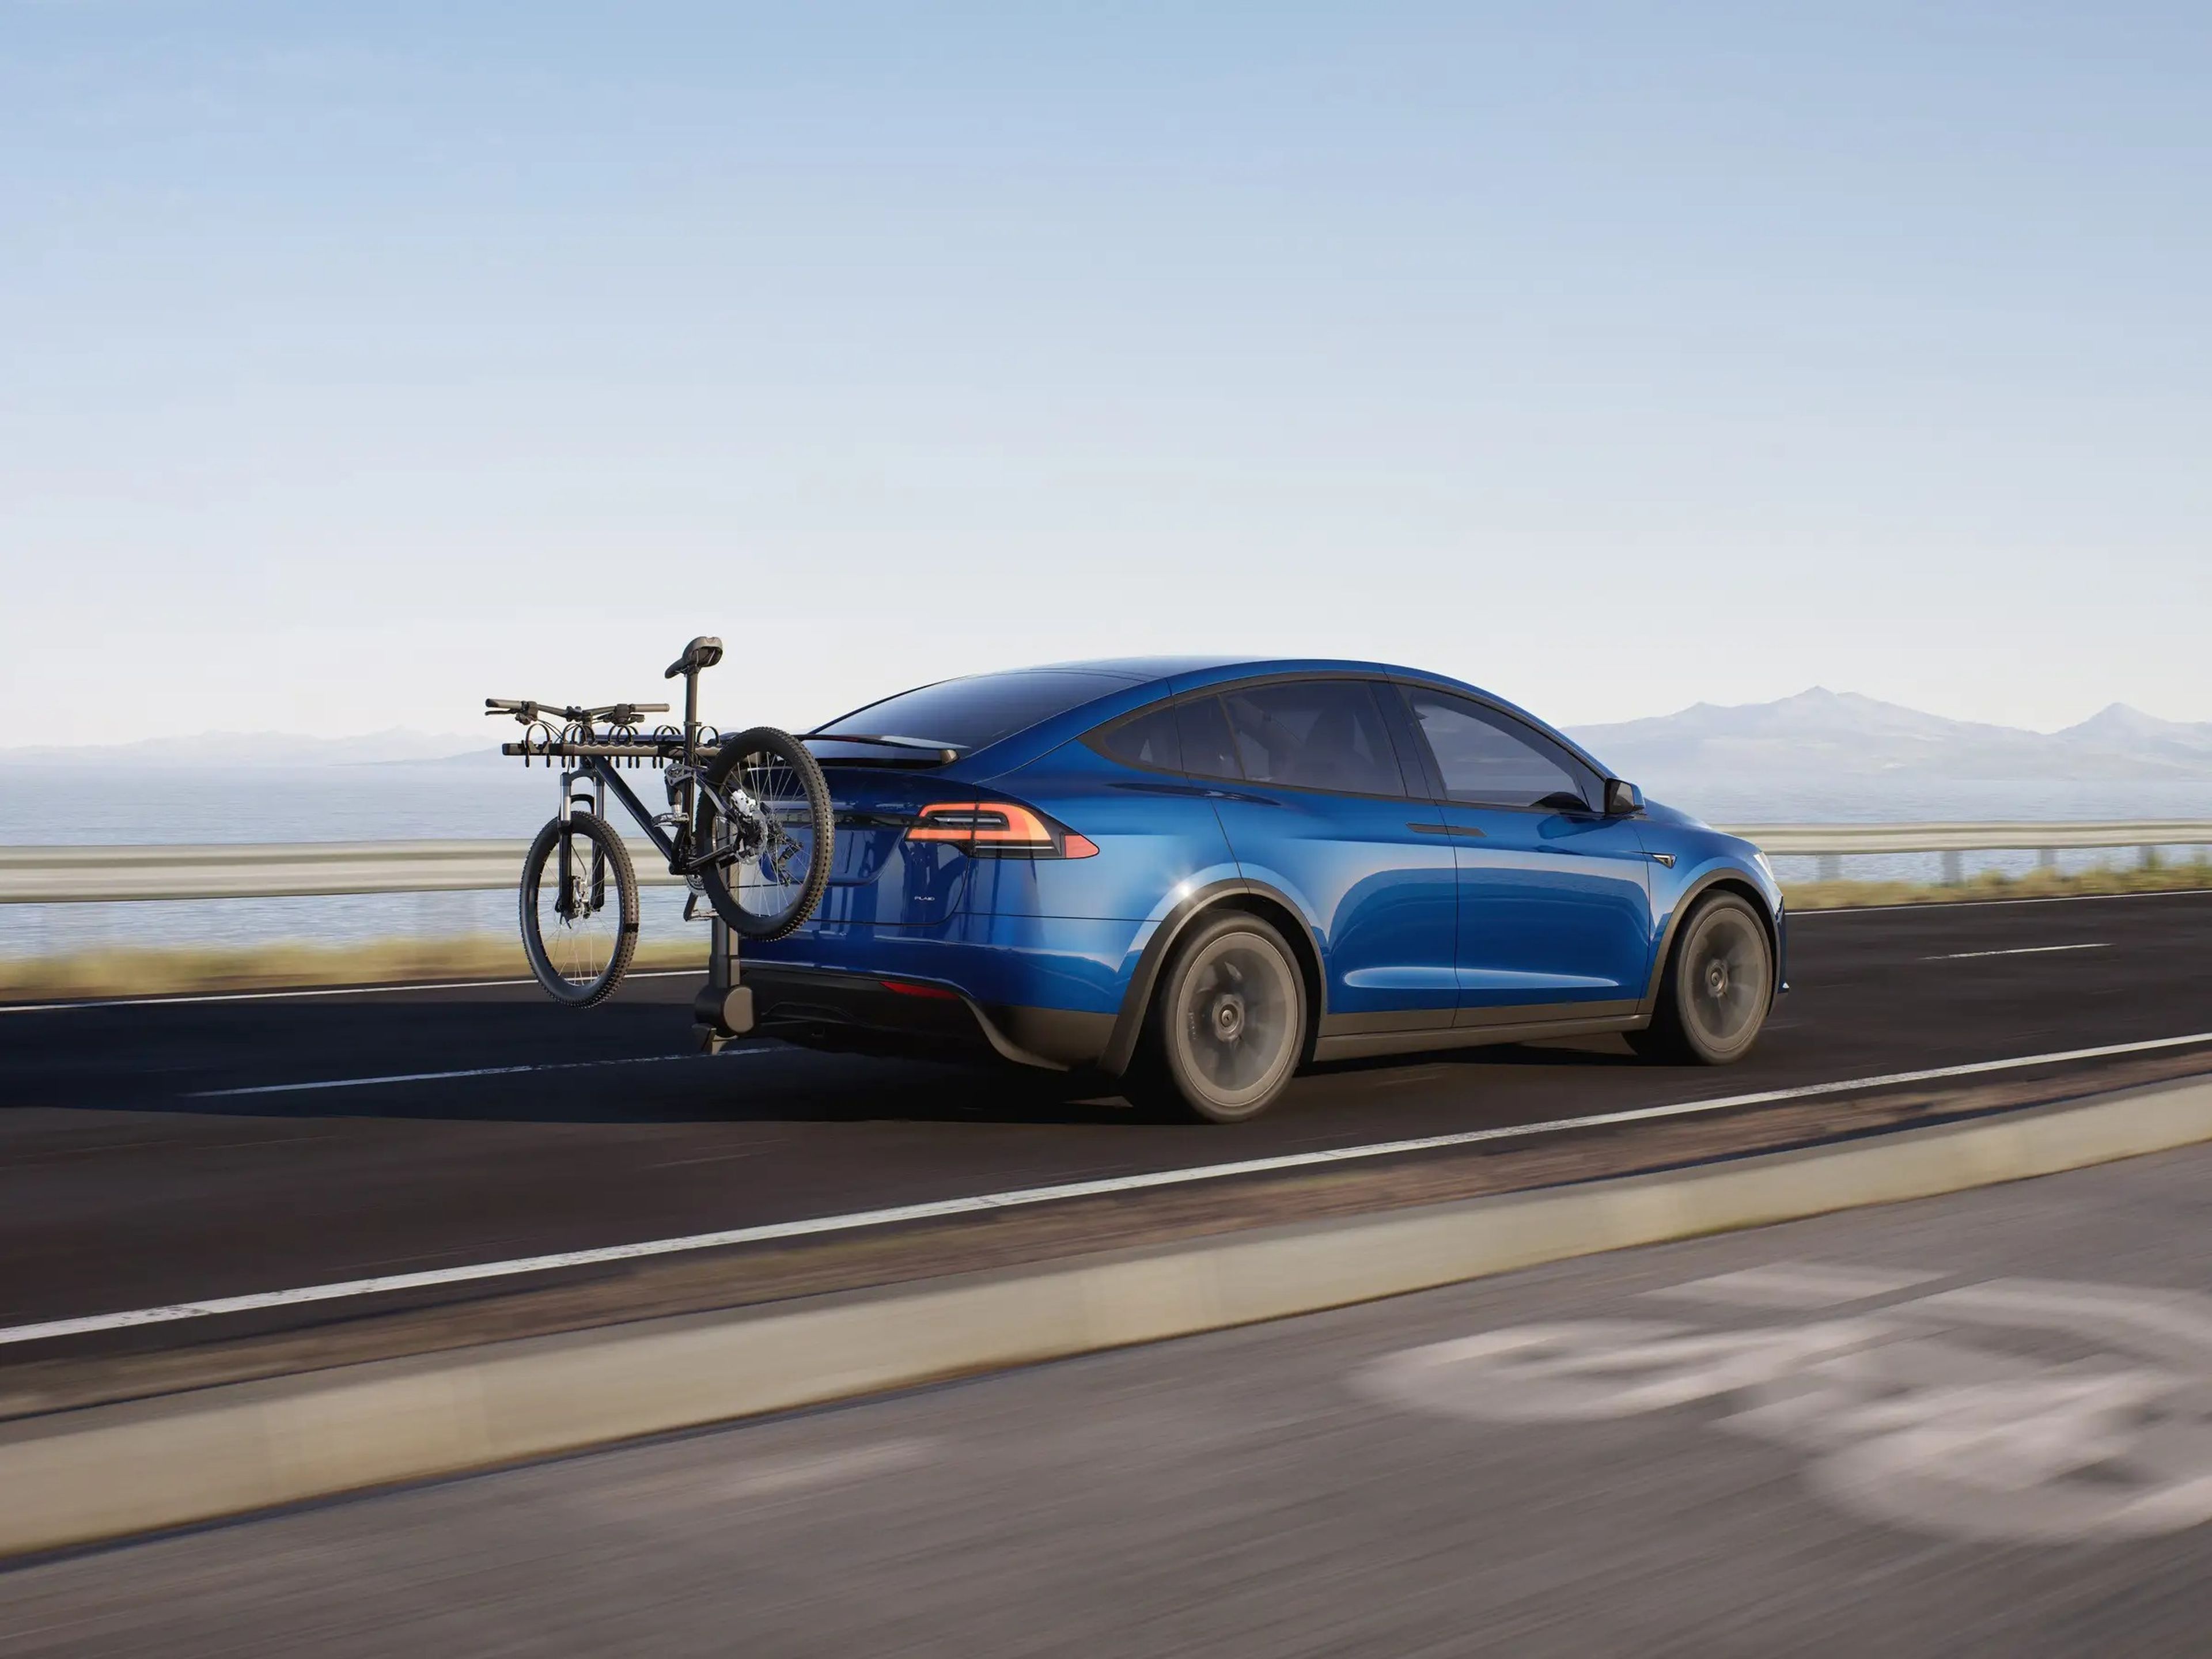 El Model X de Tesla podría aparecer en un próximo anuncio después de que Elon Musk anunciara que la compañía empezaría a emitir anuncios por primera vez.